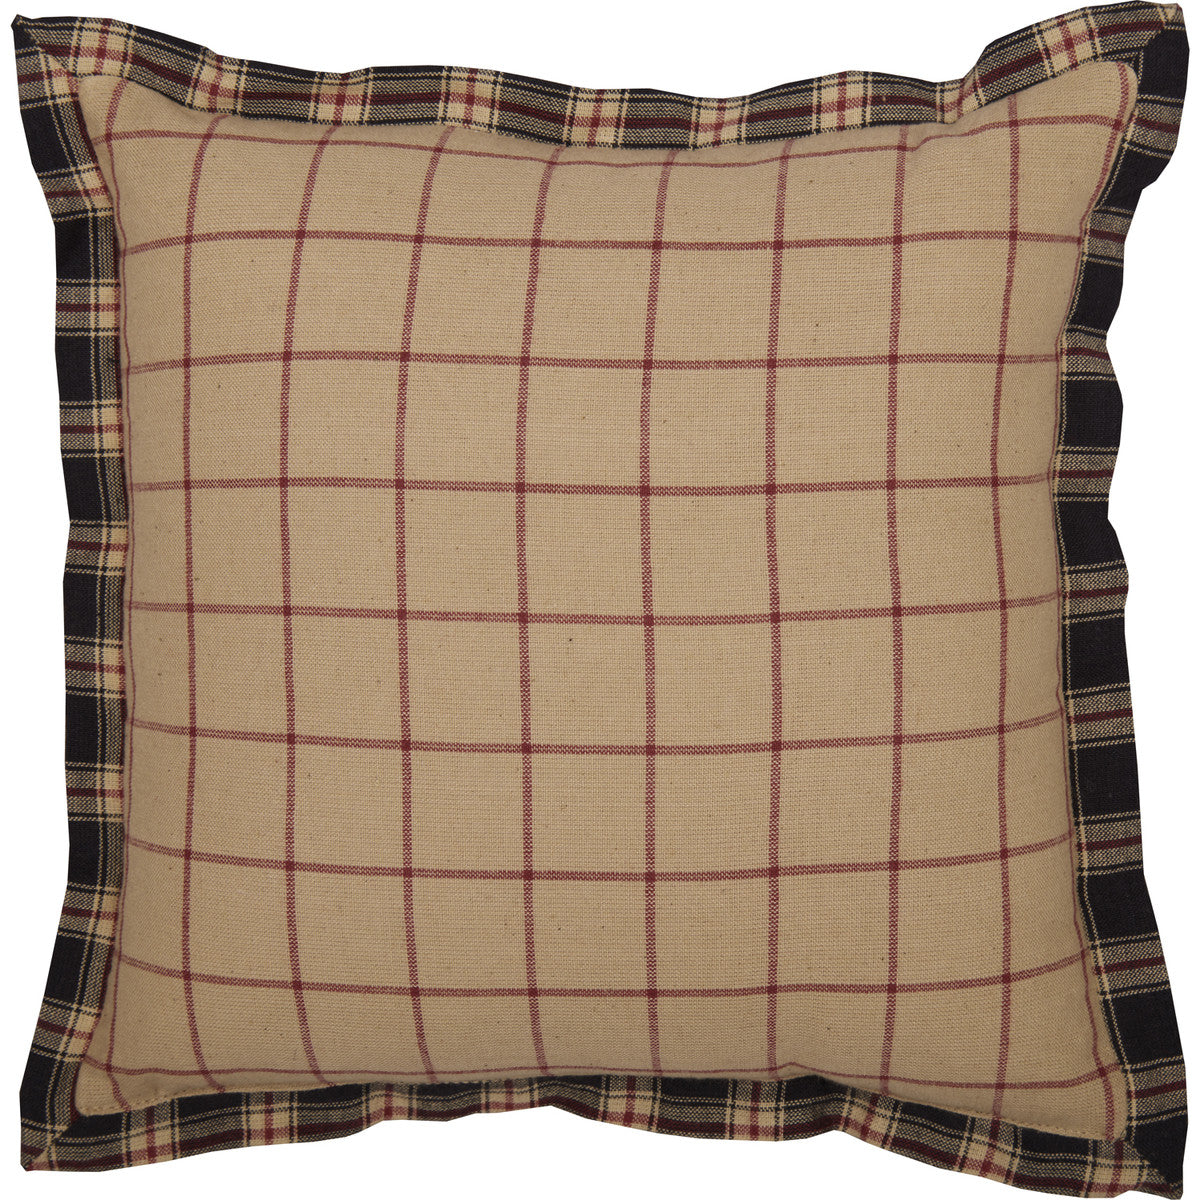 Malta 10 x 10 Pillow - Soft Black/Khaki